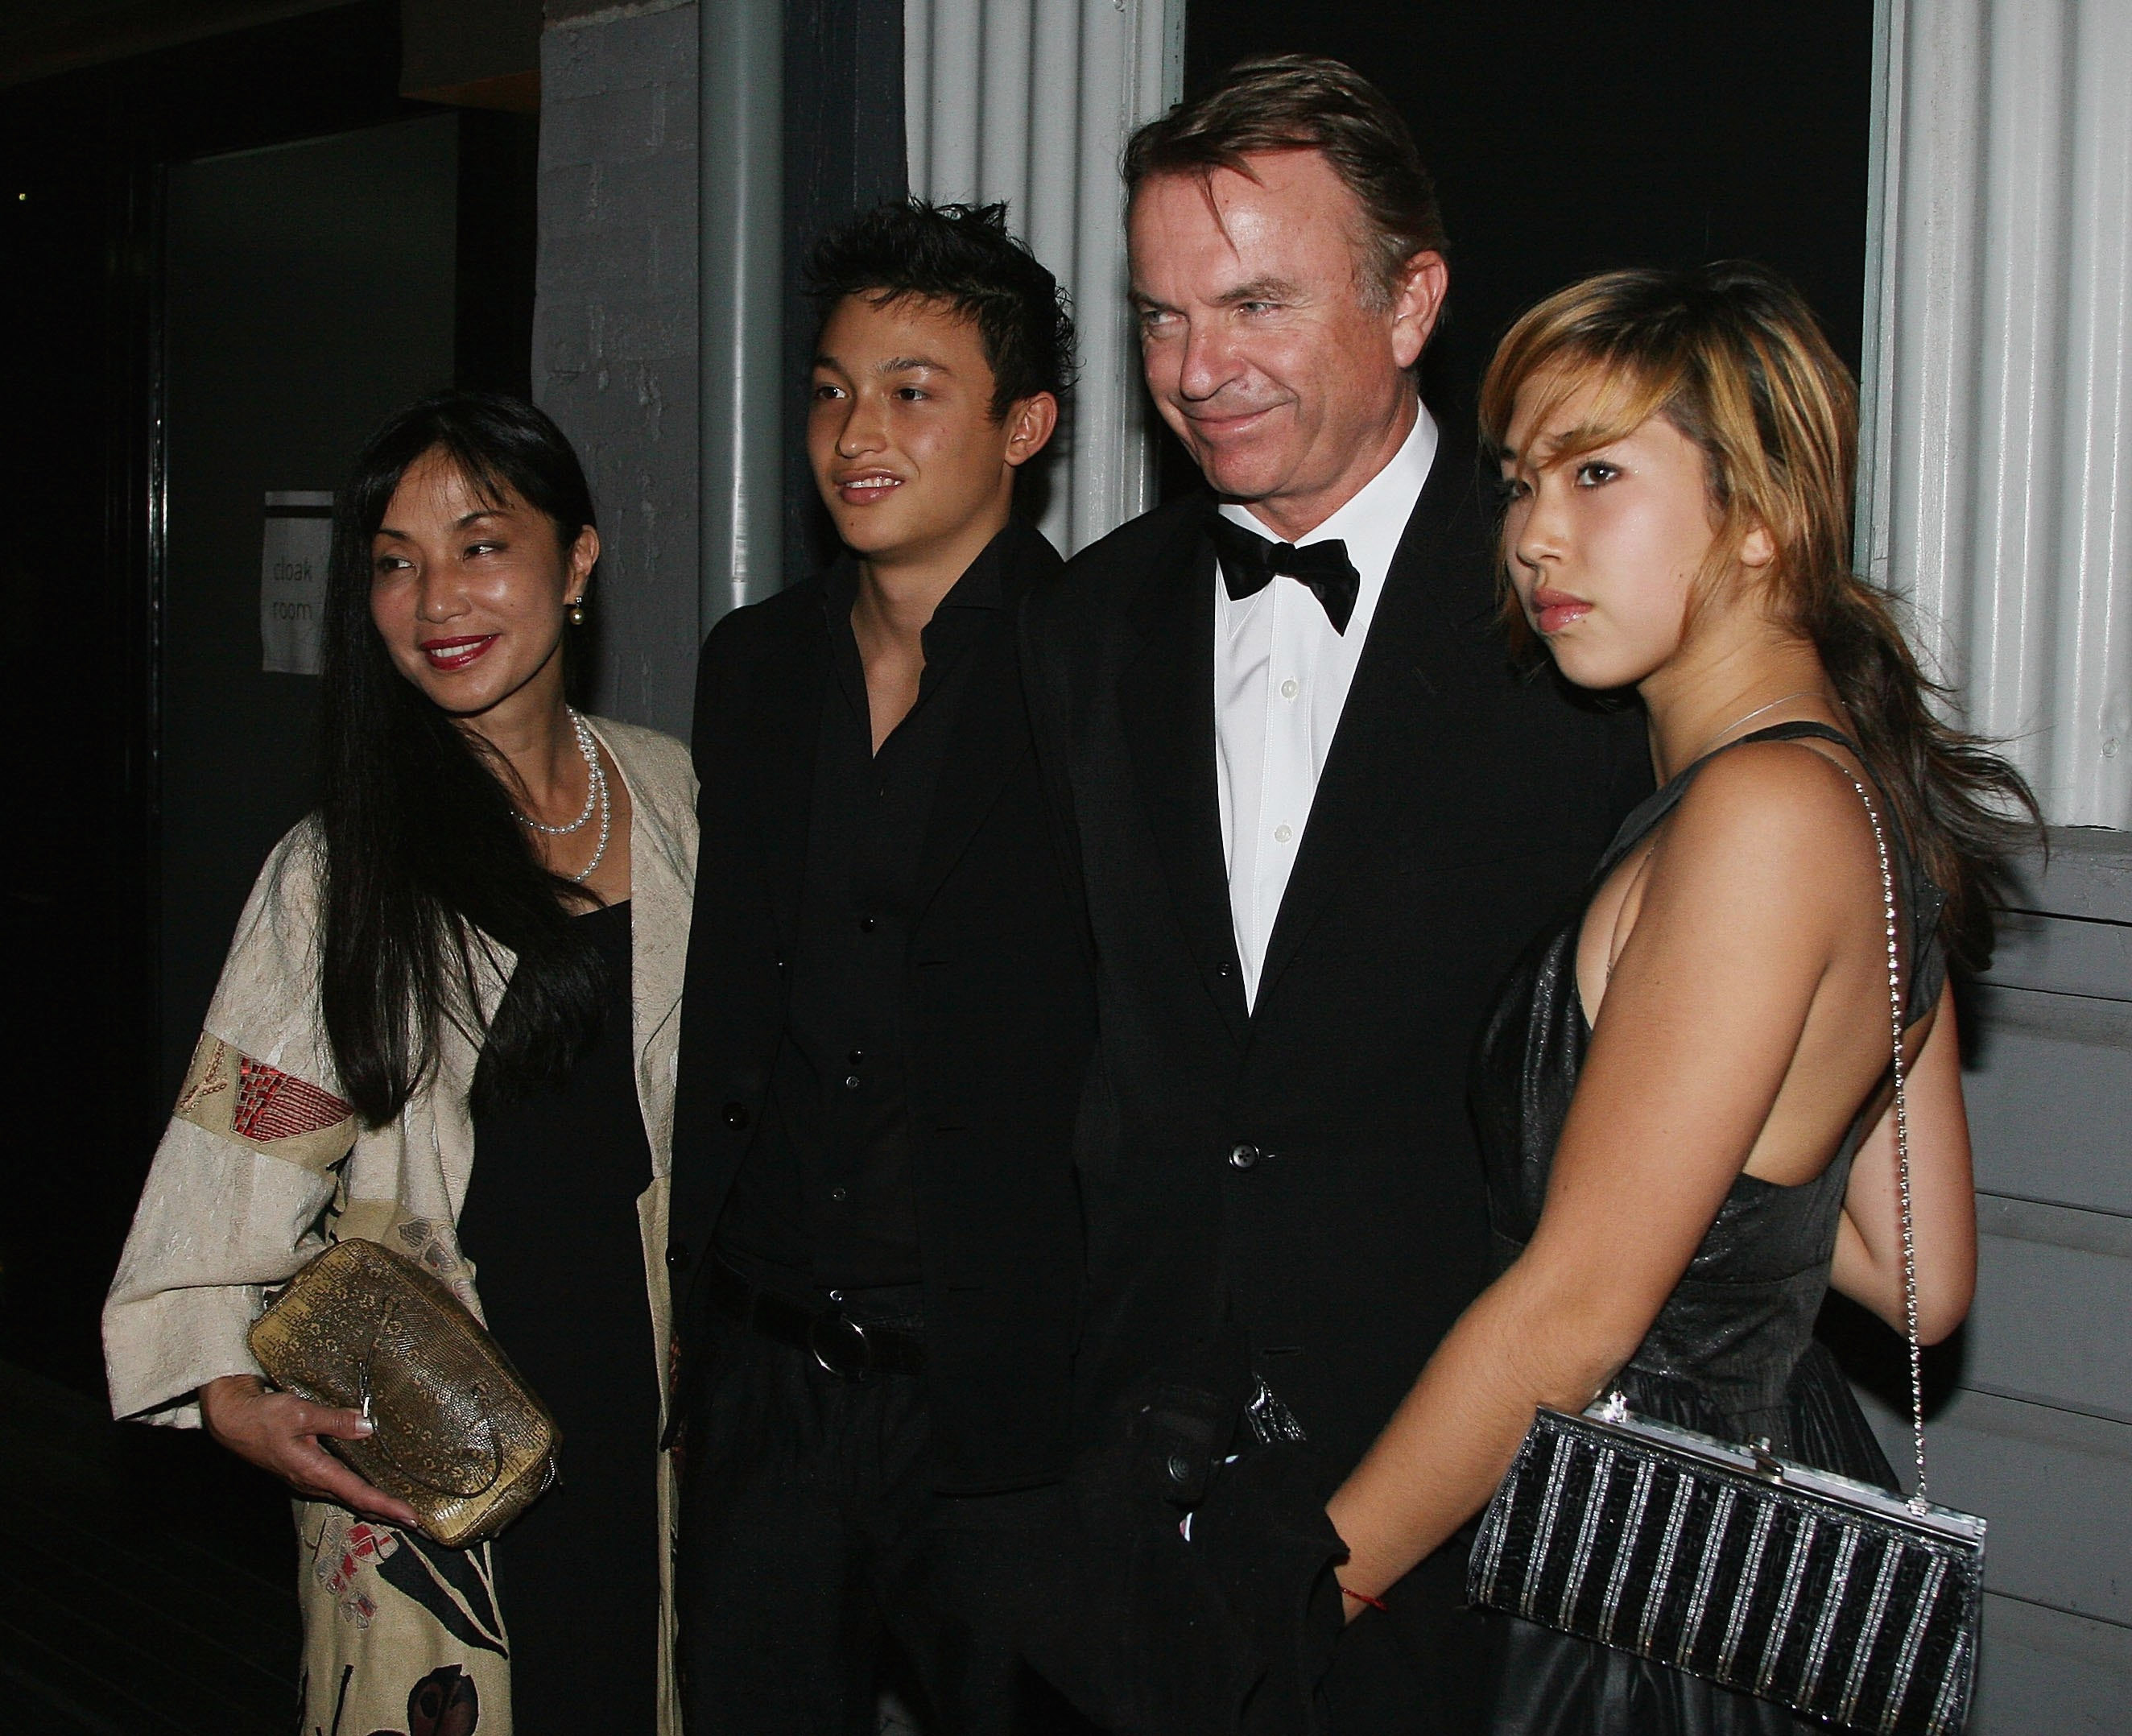 Sam Neill y su familia en la gala inaugural de la AFTRS (Australian Film Television & Radio School) en Doltone House Pyrmont el 16 de abril de 2007 en Sydney, Australia. | Fuente: Getty Images